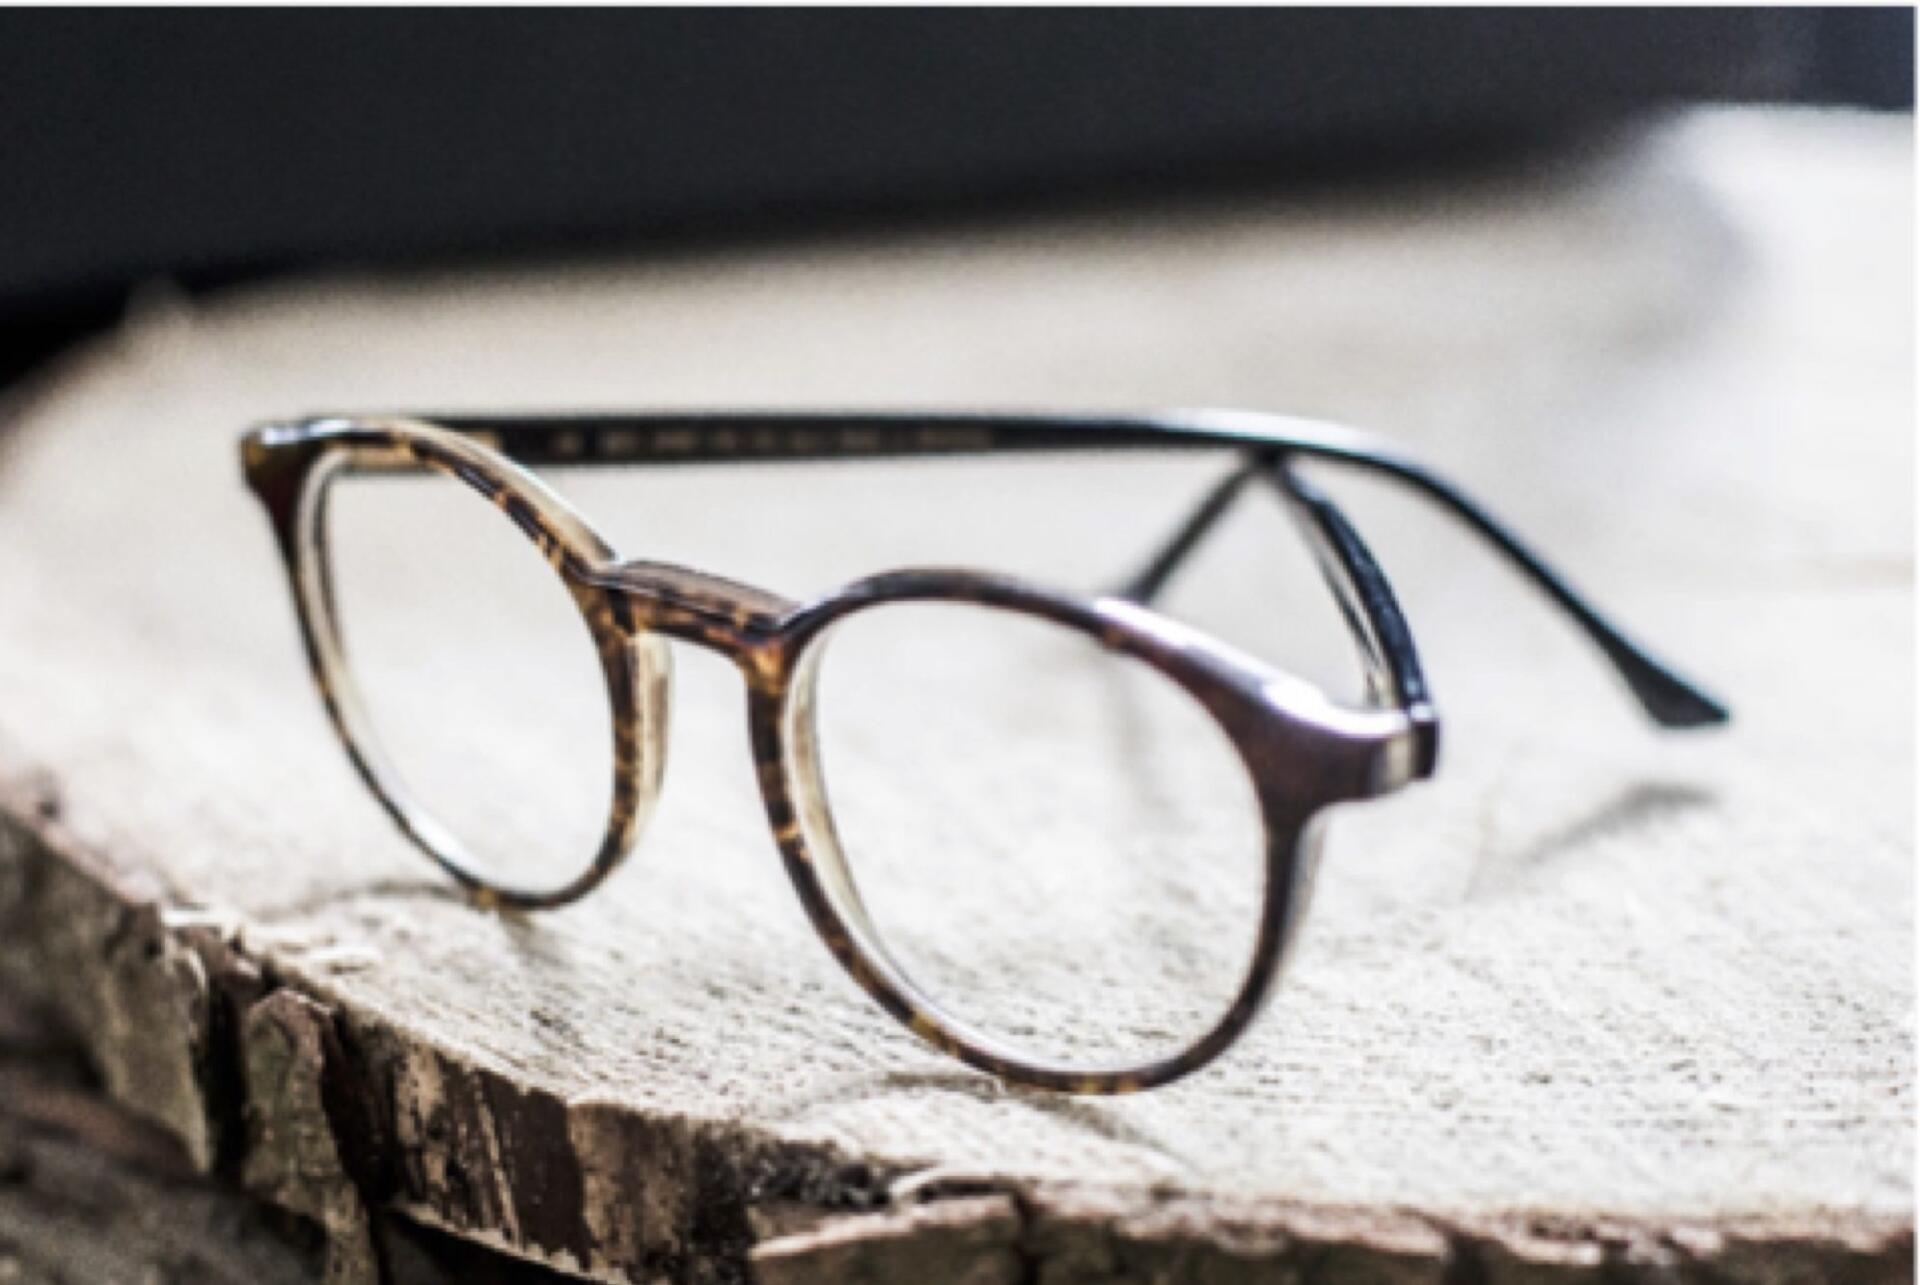 Beitragsbild zu “Hornbrillen: Die Nerd Brille wird zum modischen Must-have”